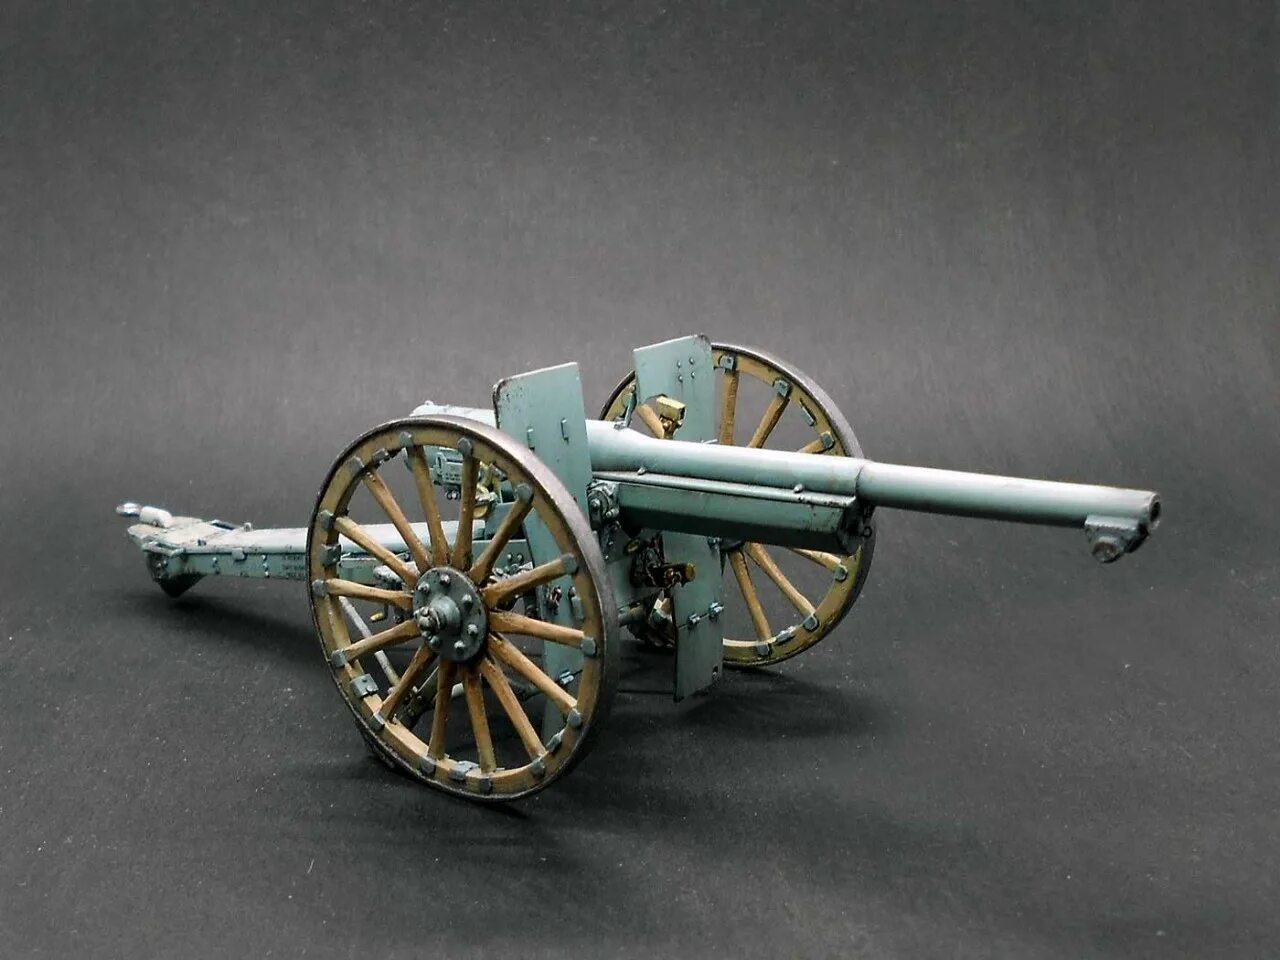 75-Мм пушка 75 mle 1897. 75 Mm mle. 1897. Пушка Шнейдера 75 мм. 75 Мм французская пушка 1897 г.